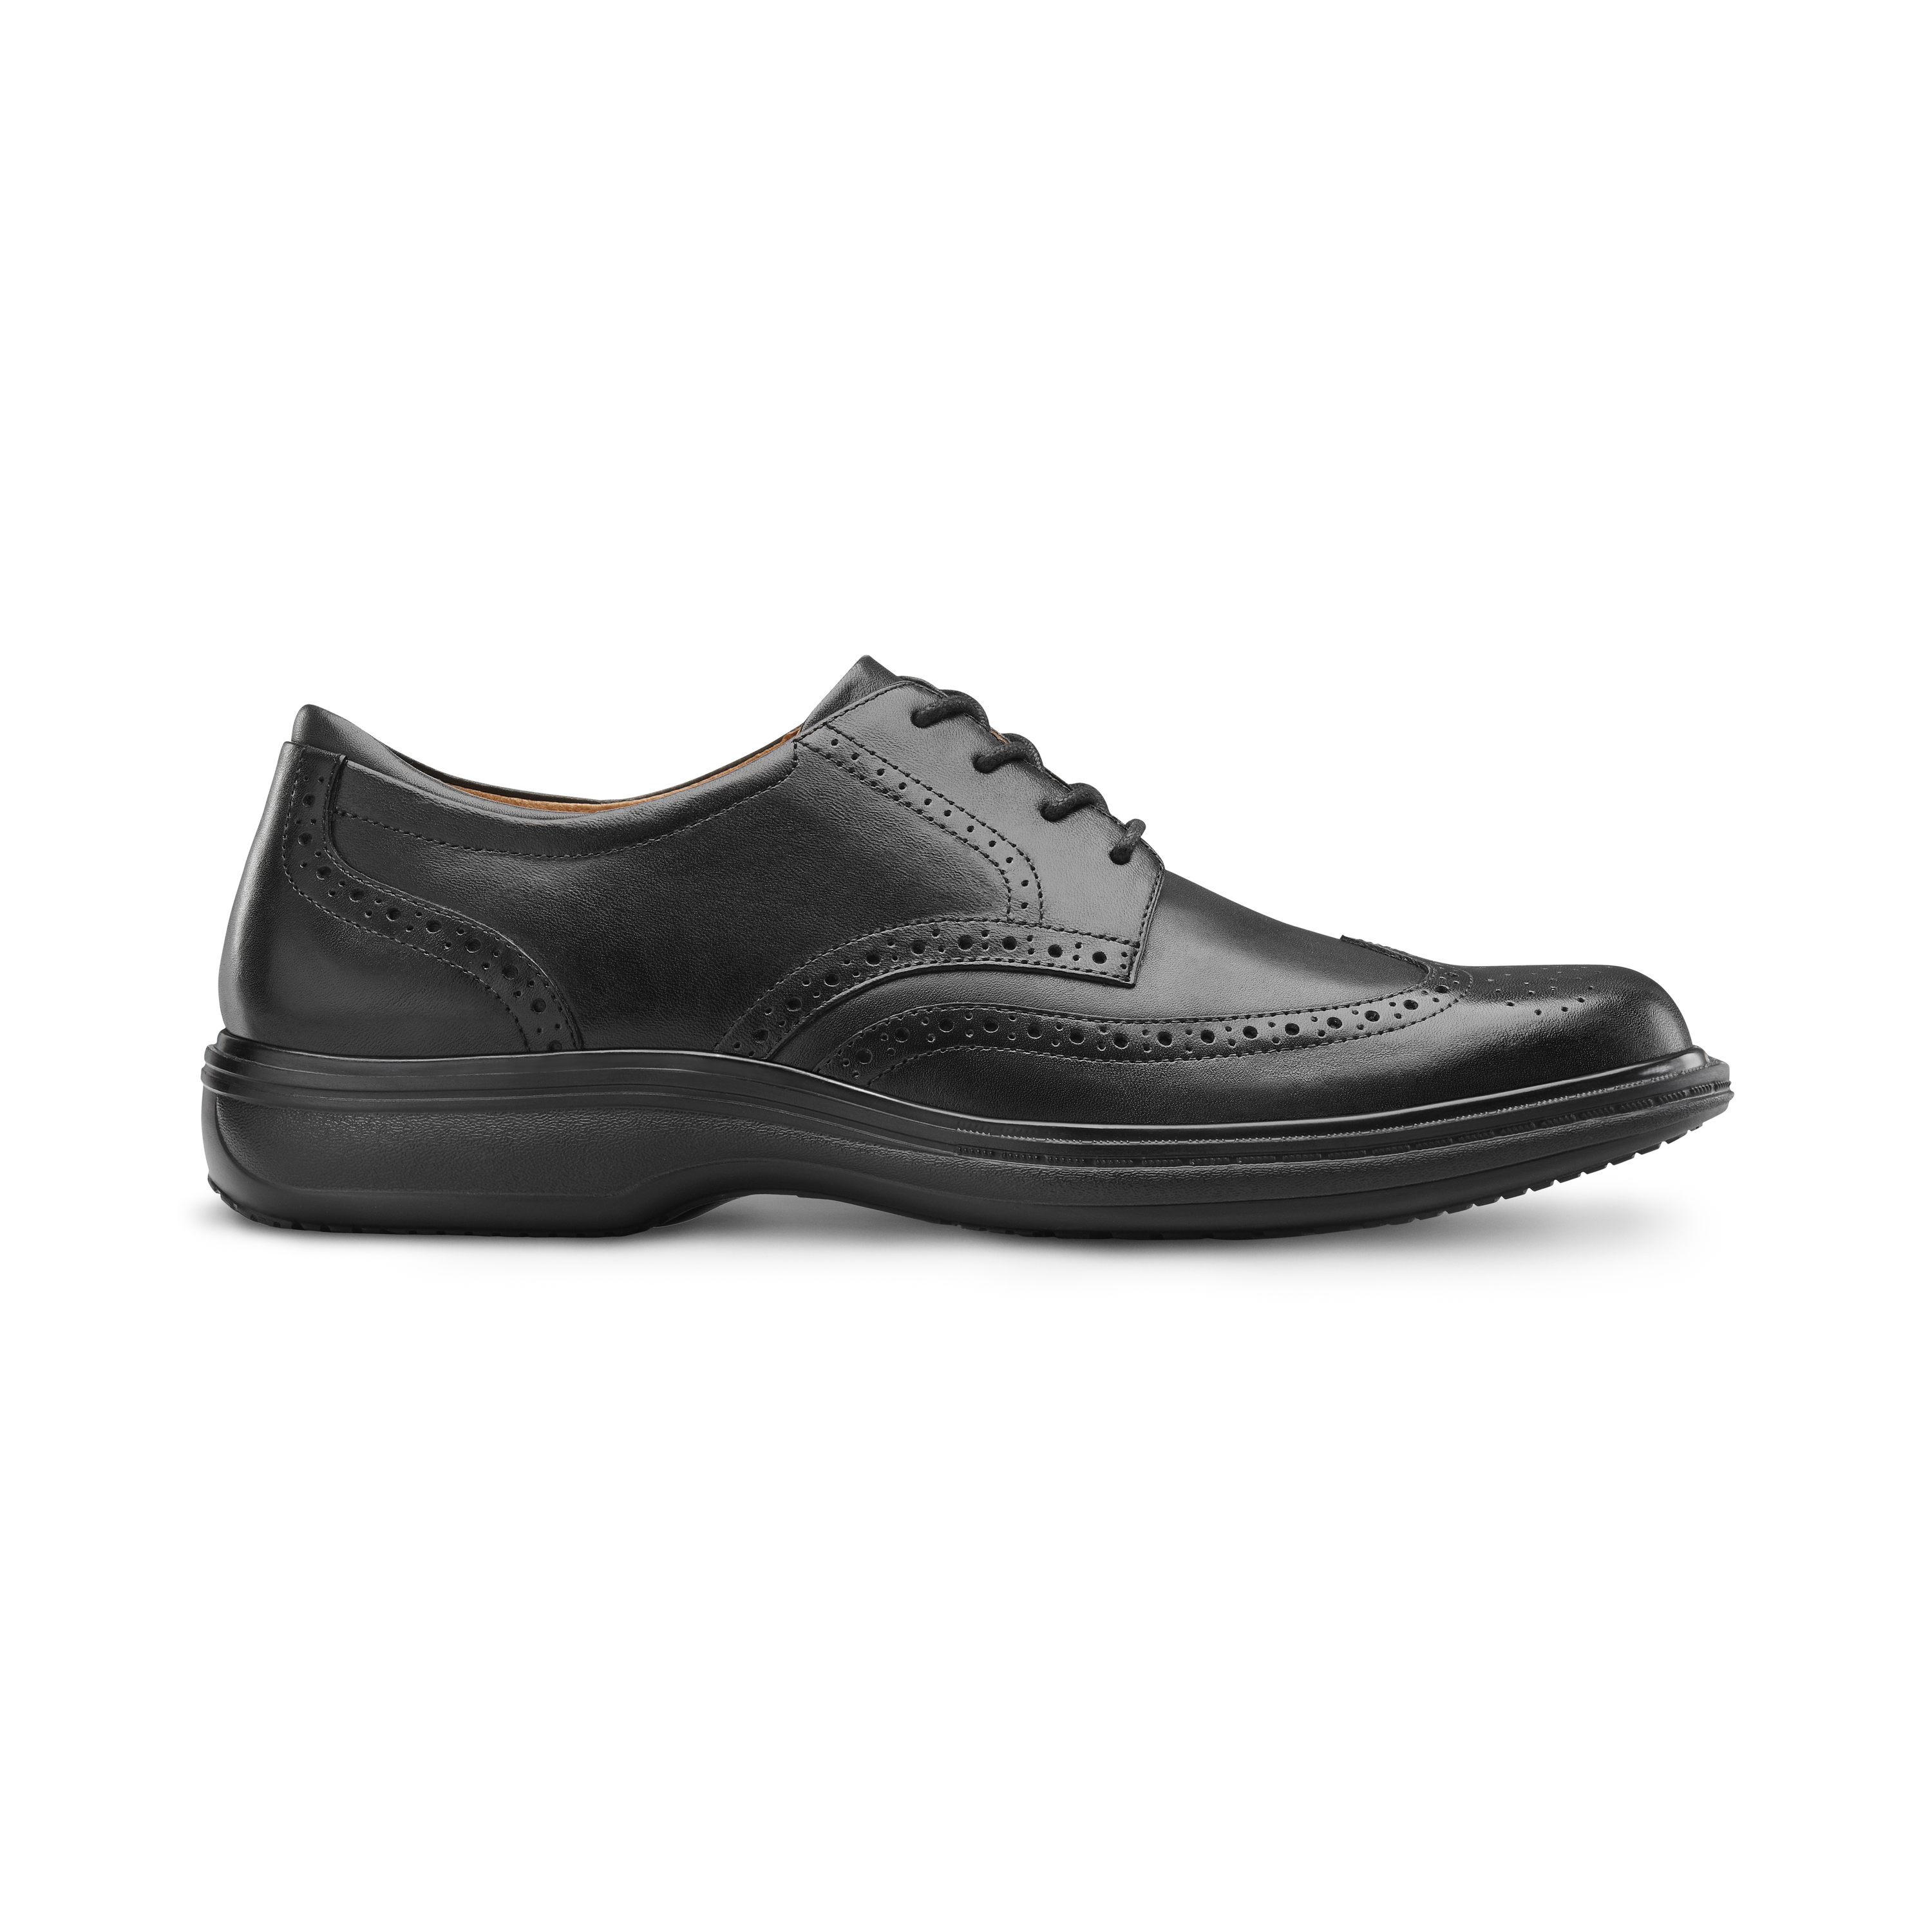 Zusatzbild DR. COMFORT® Wing schwarz, außen, Orthopädische Schuhe, Zeitloses, klassisches Design. Minimales Gewicht bei maximalem Comfort